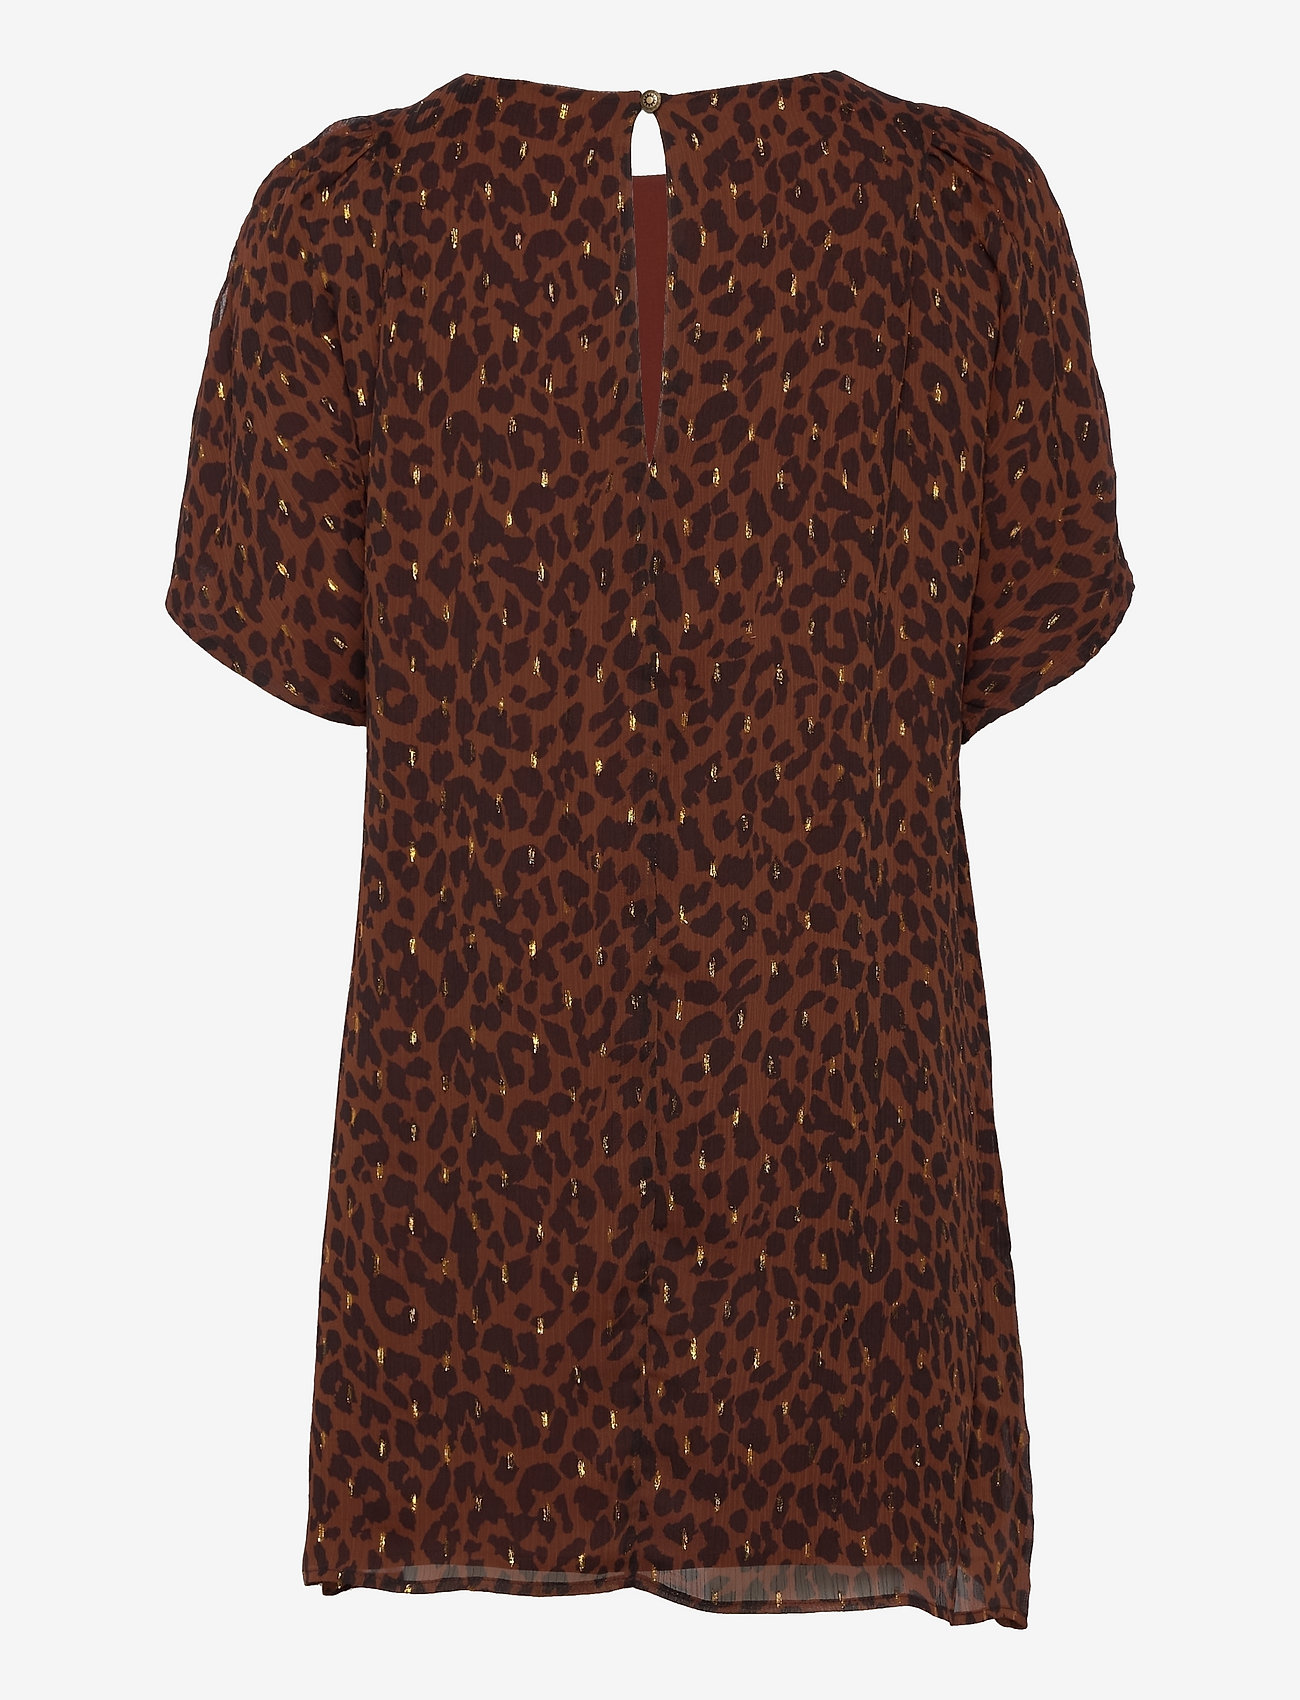 Superdry - T-Shirt Metallic Dress - korte jurken - leopard print - 1